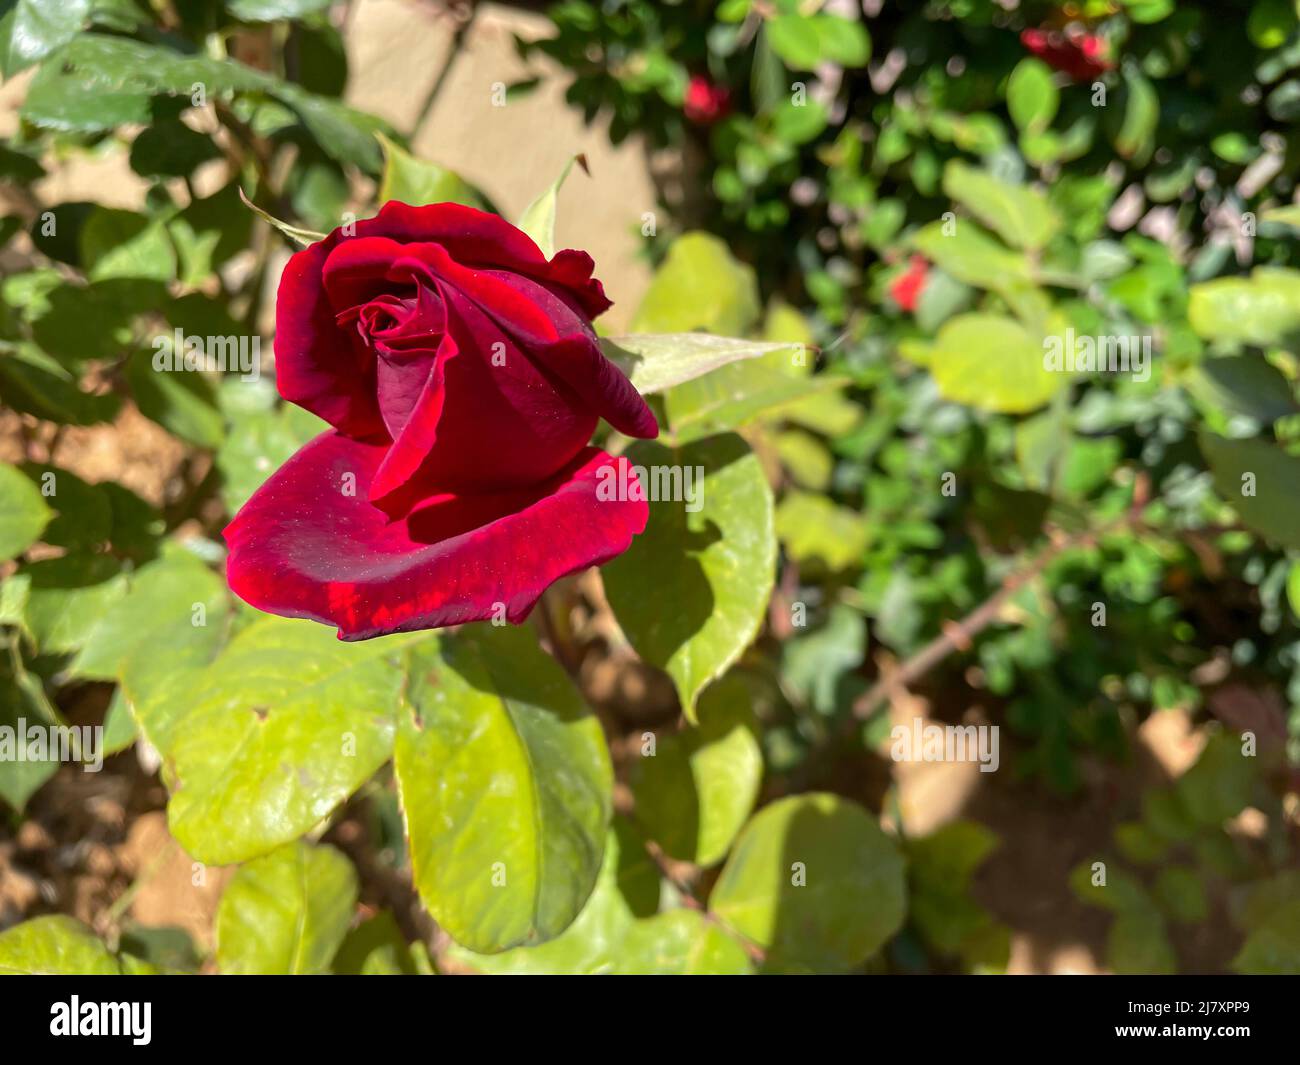 Nahaufnahme der roten Knospenrose mit verschwommenem grünen Hintergrund, roter Rosenstrauch, der im sonnigen Garten blüht Stockfoto